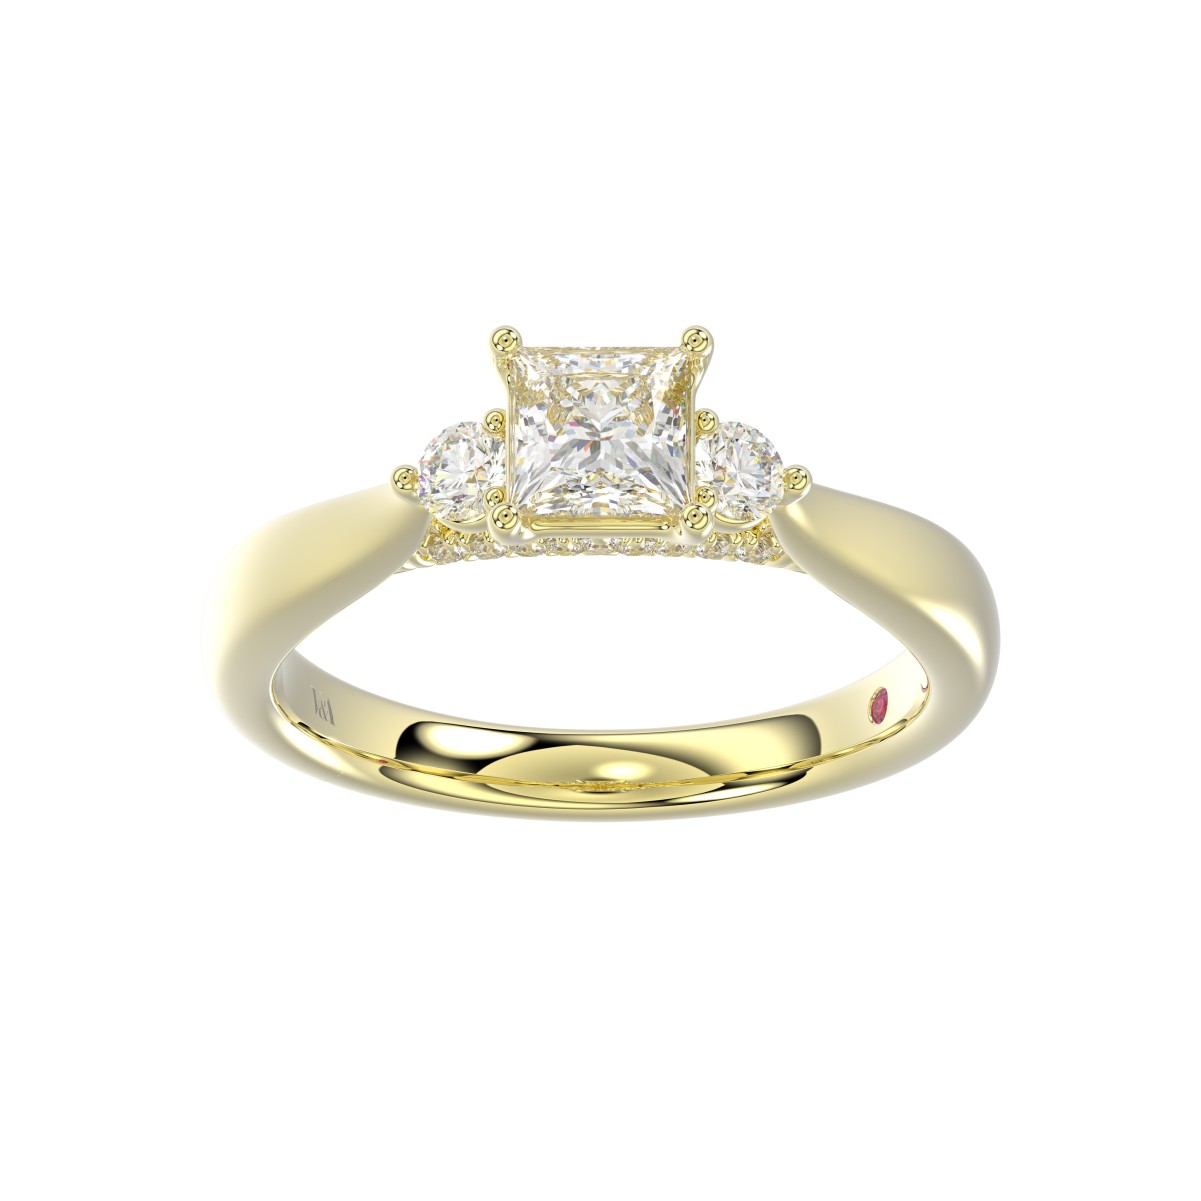 18K YELLOW GOLD 1CT ROUND/PRINCESS DIAMOND LADIES RING( CENTER STONE PRINCESS DIAMOND 3/4 CT)